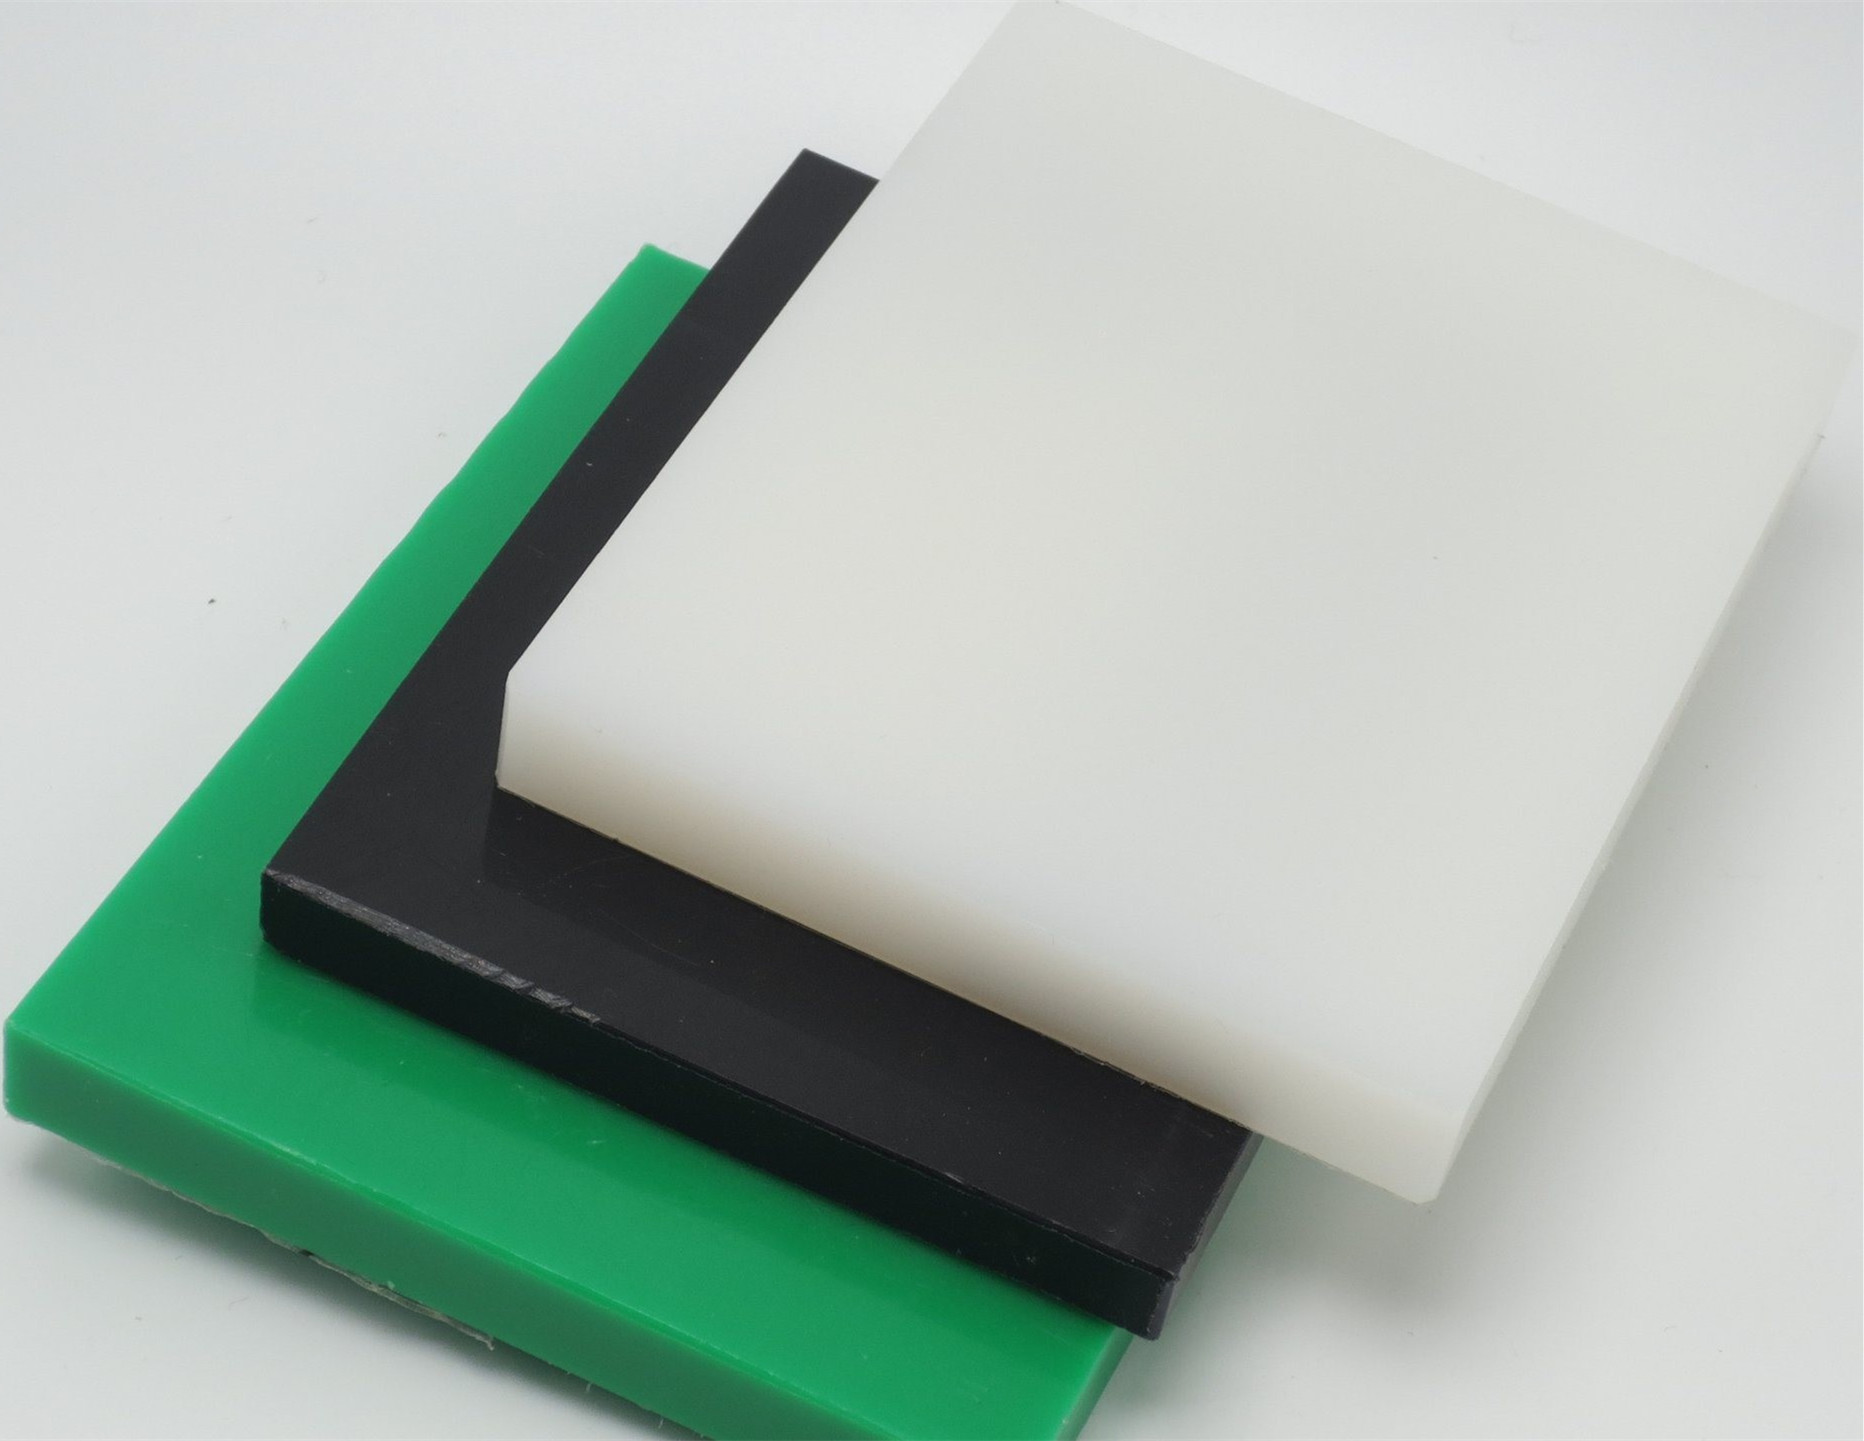 廠價供應PP板沖床膠、白色塑料斬板、尼龍橡塑裁切板